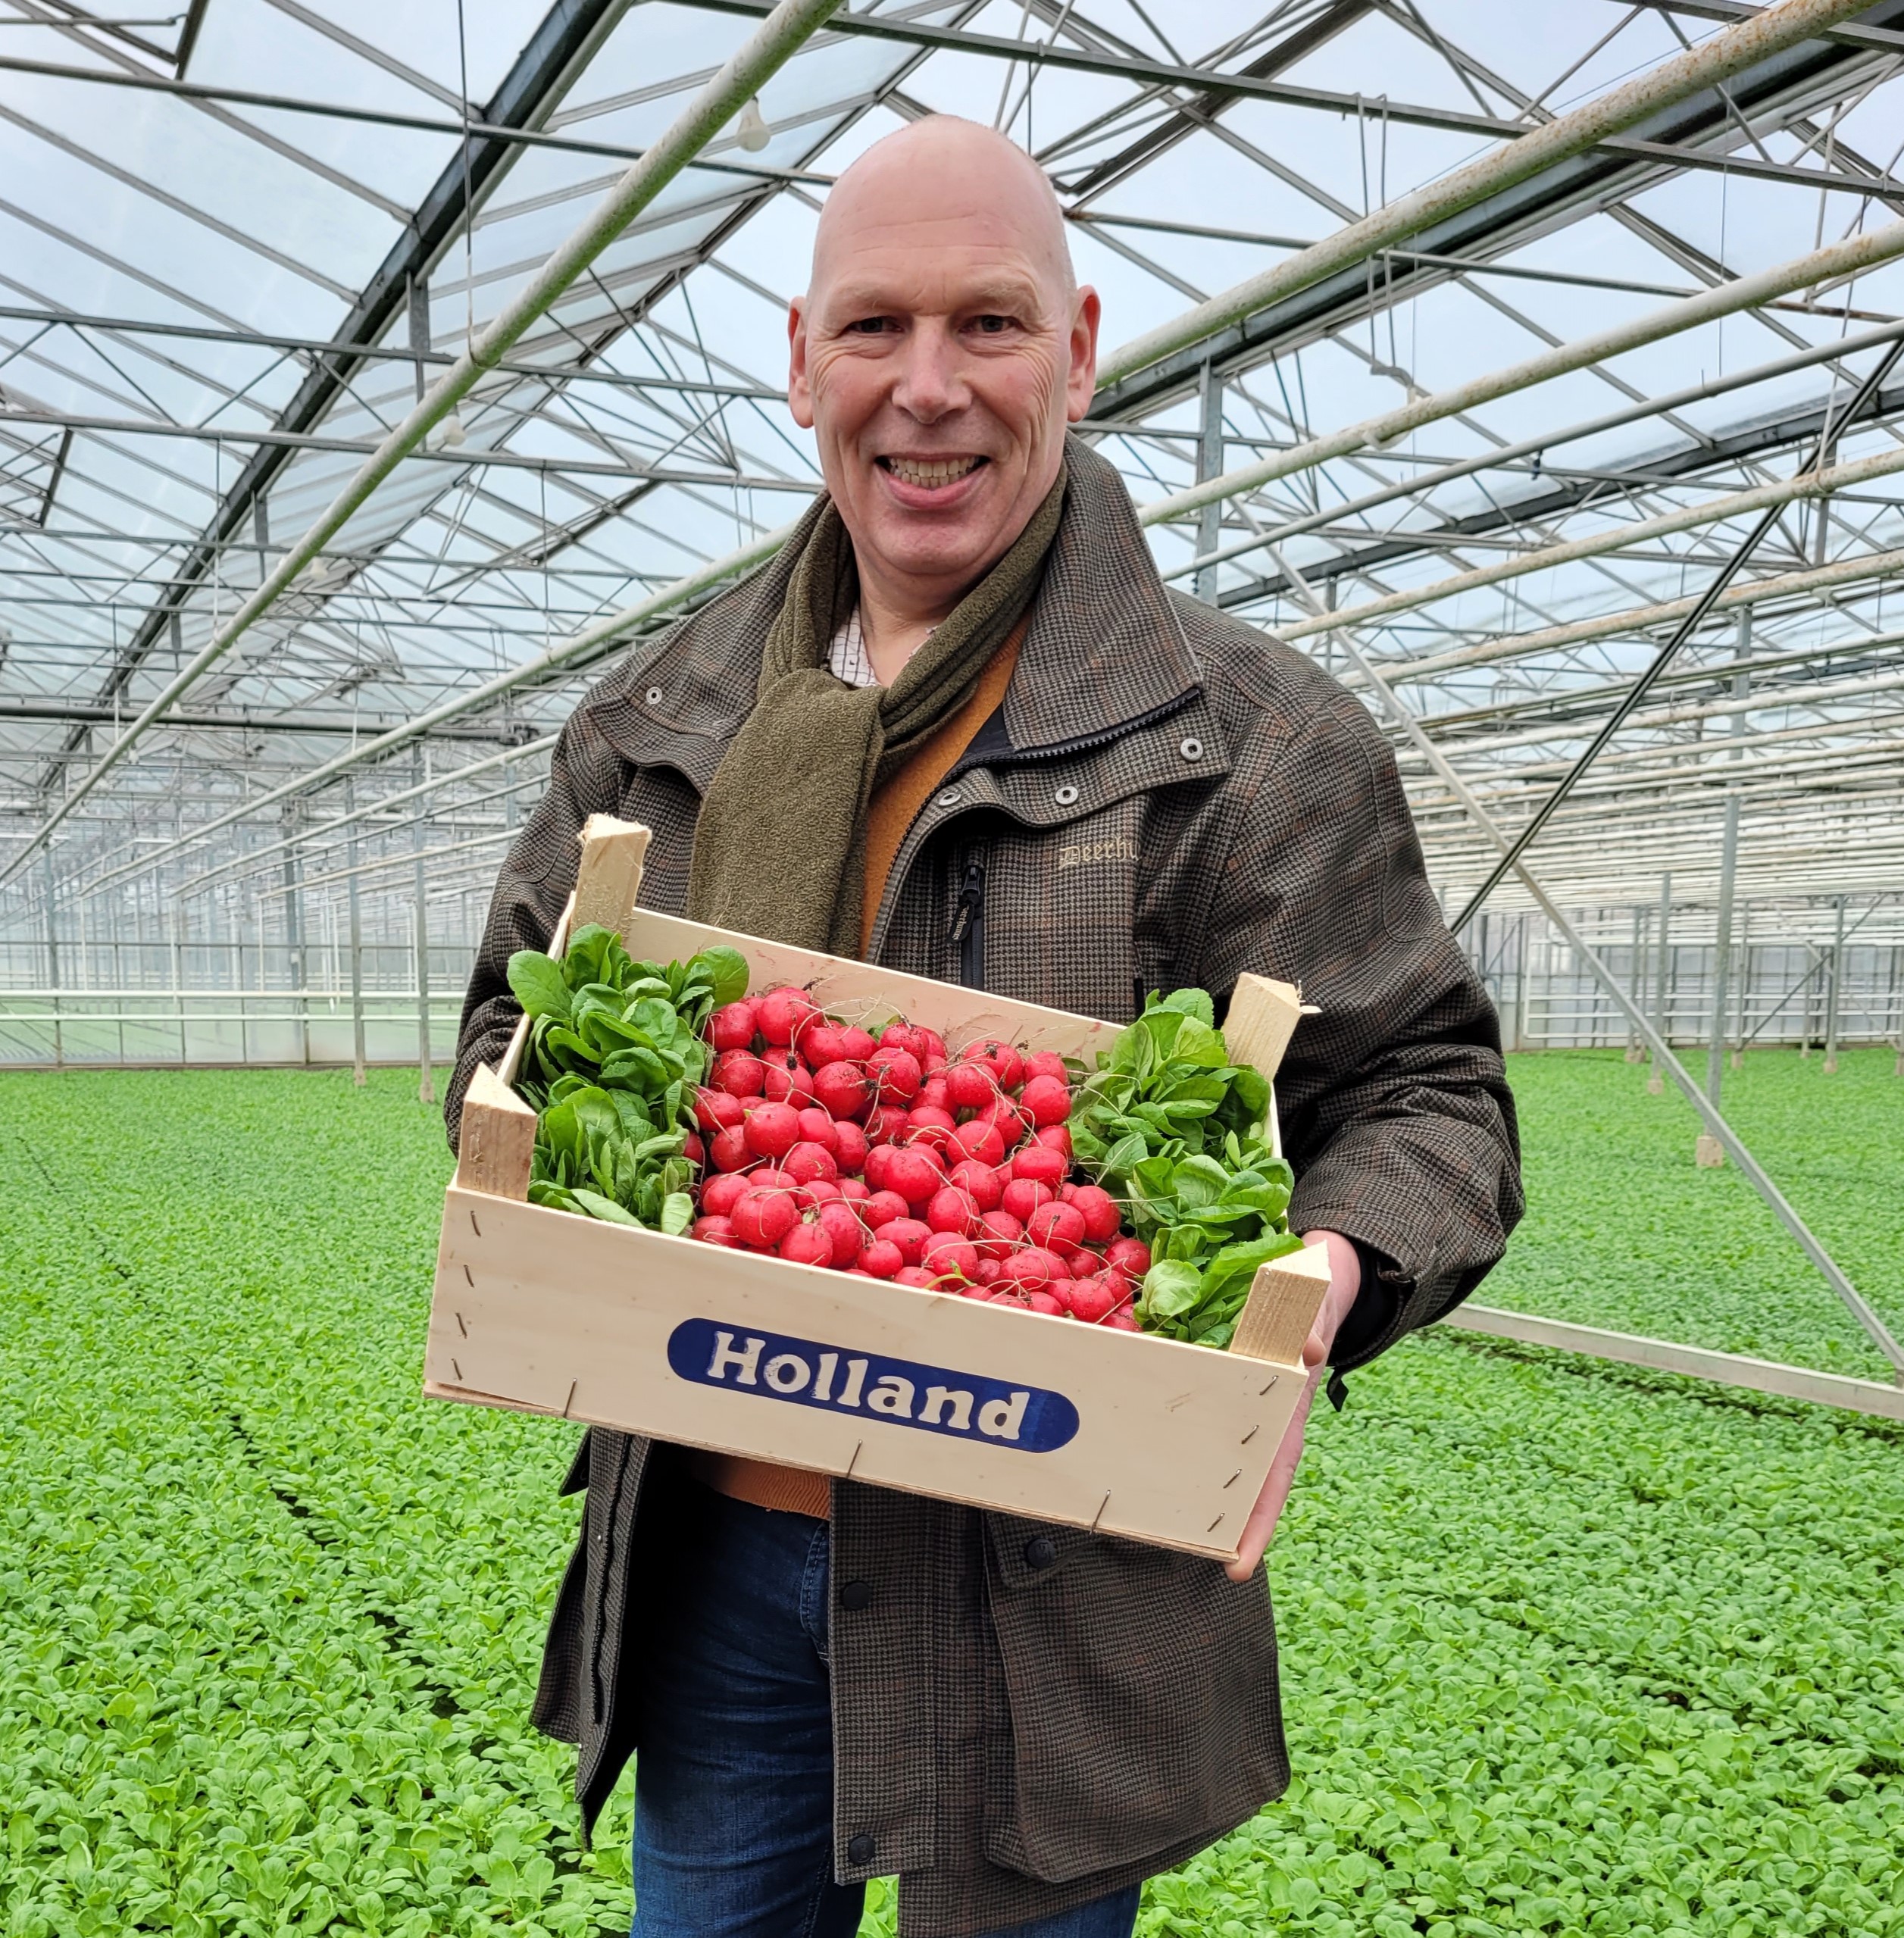 Meet the people behind the crops: Dirk-Jan Polak